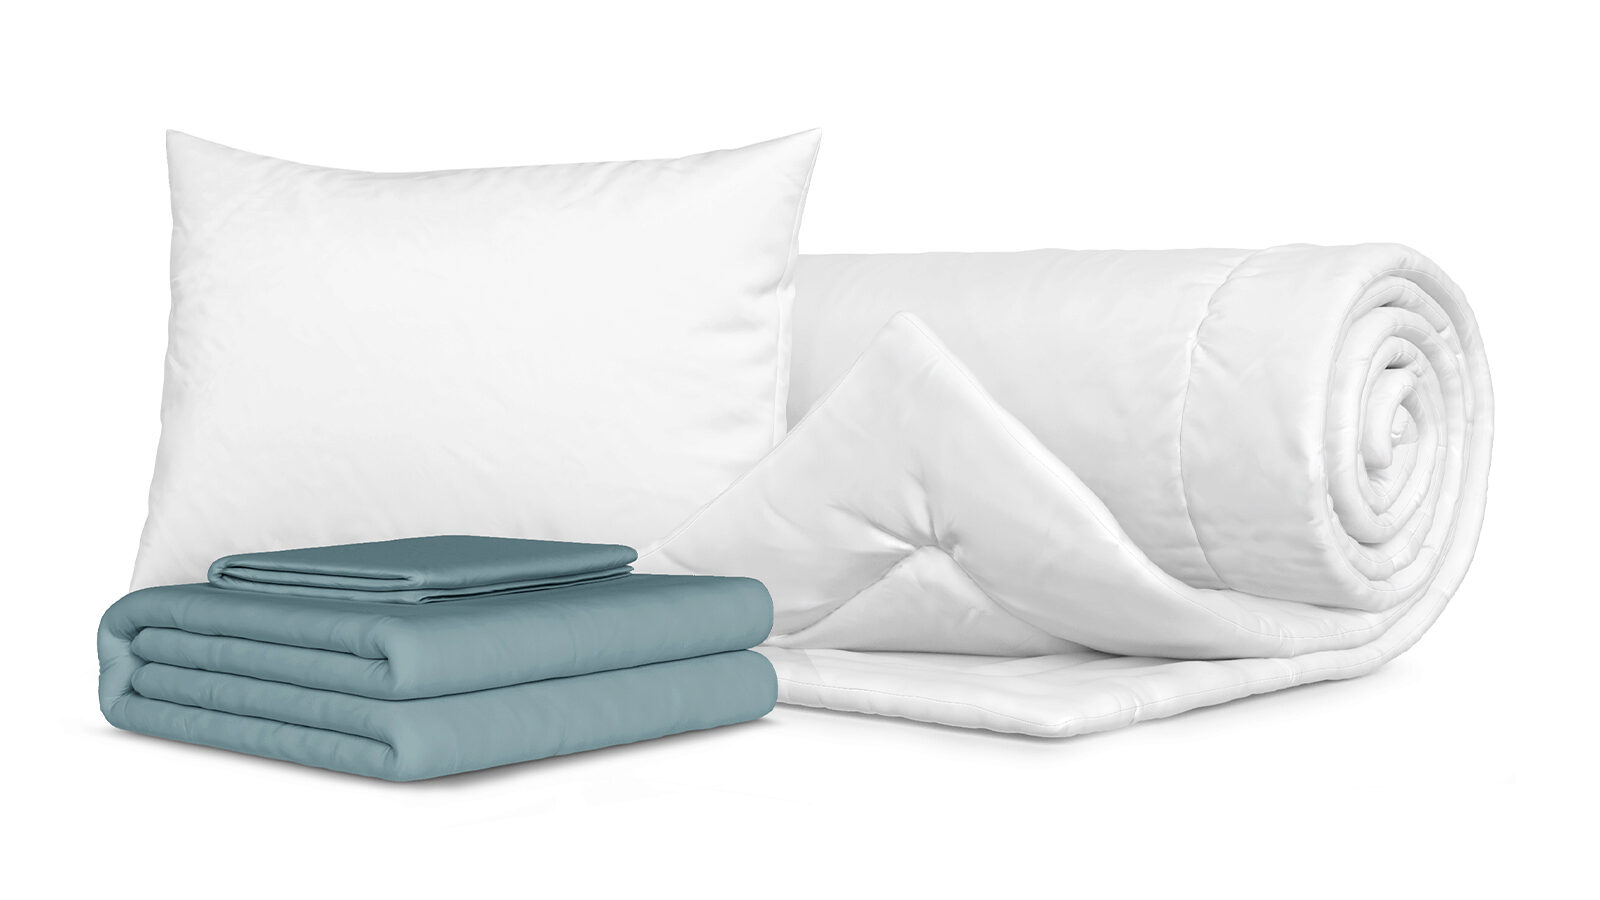 Комплект Одеяло Beat + Подушка Sky + Комплект постельного белья Comfort Cotton, цвет: Серо-голубой правила поведения в пришкольном лагере комплект из 8 плакатов